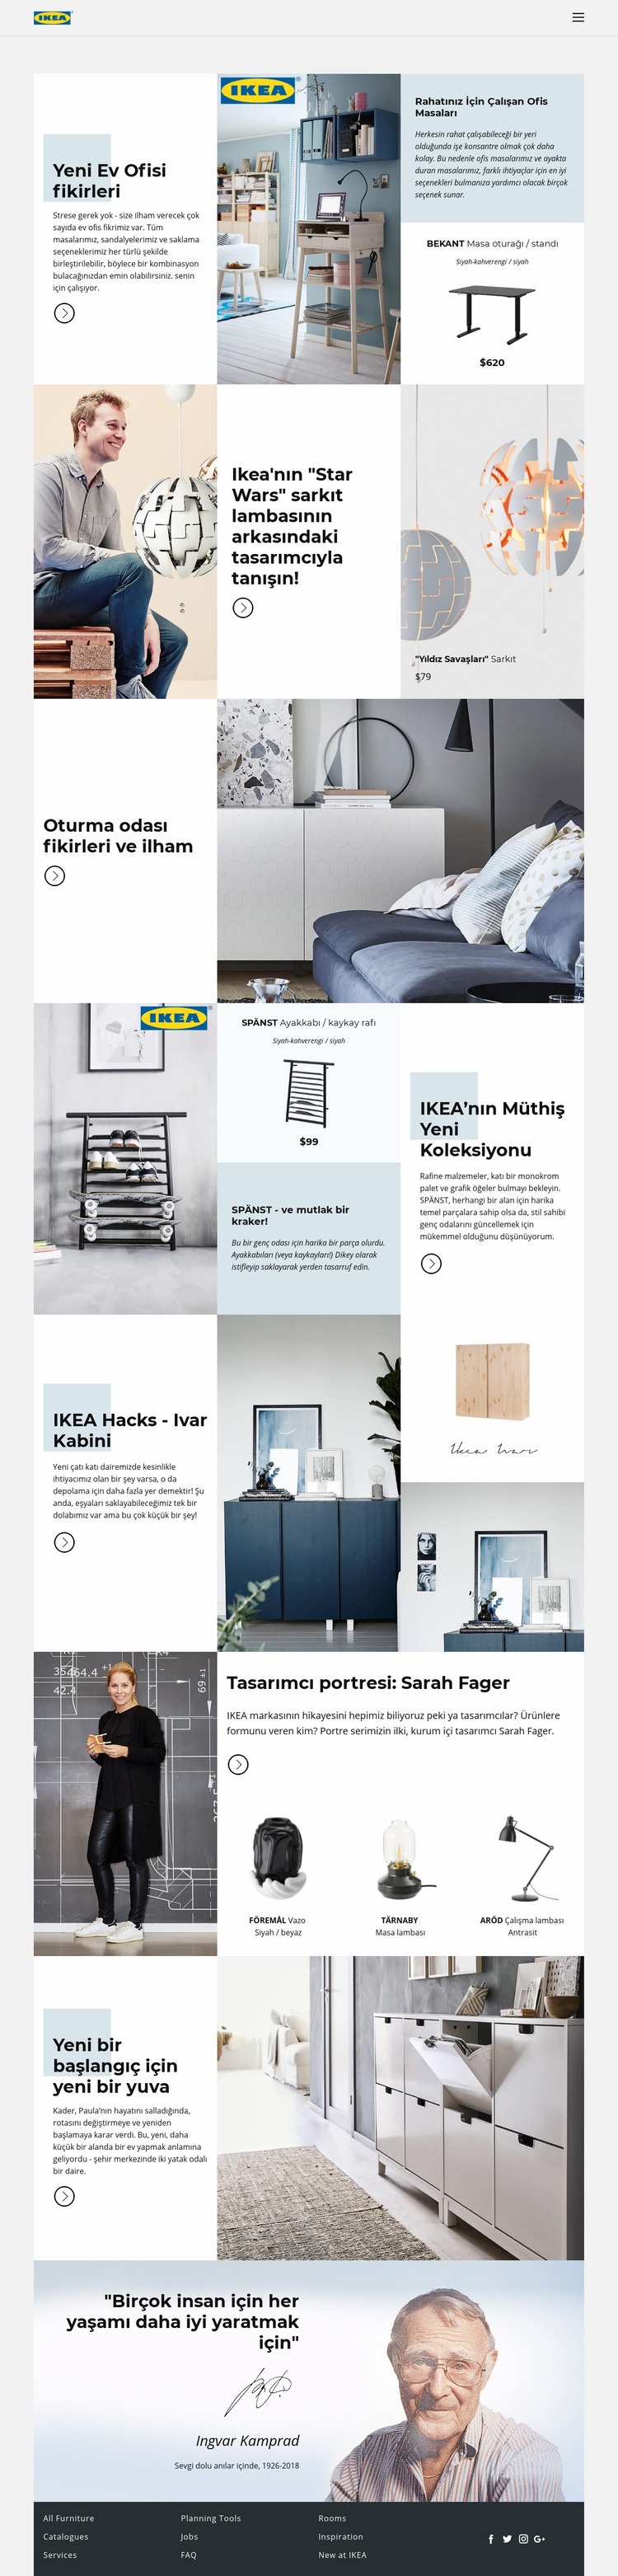 IKEA'dan İlham Web Sitesi Mockup'ı